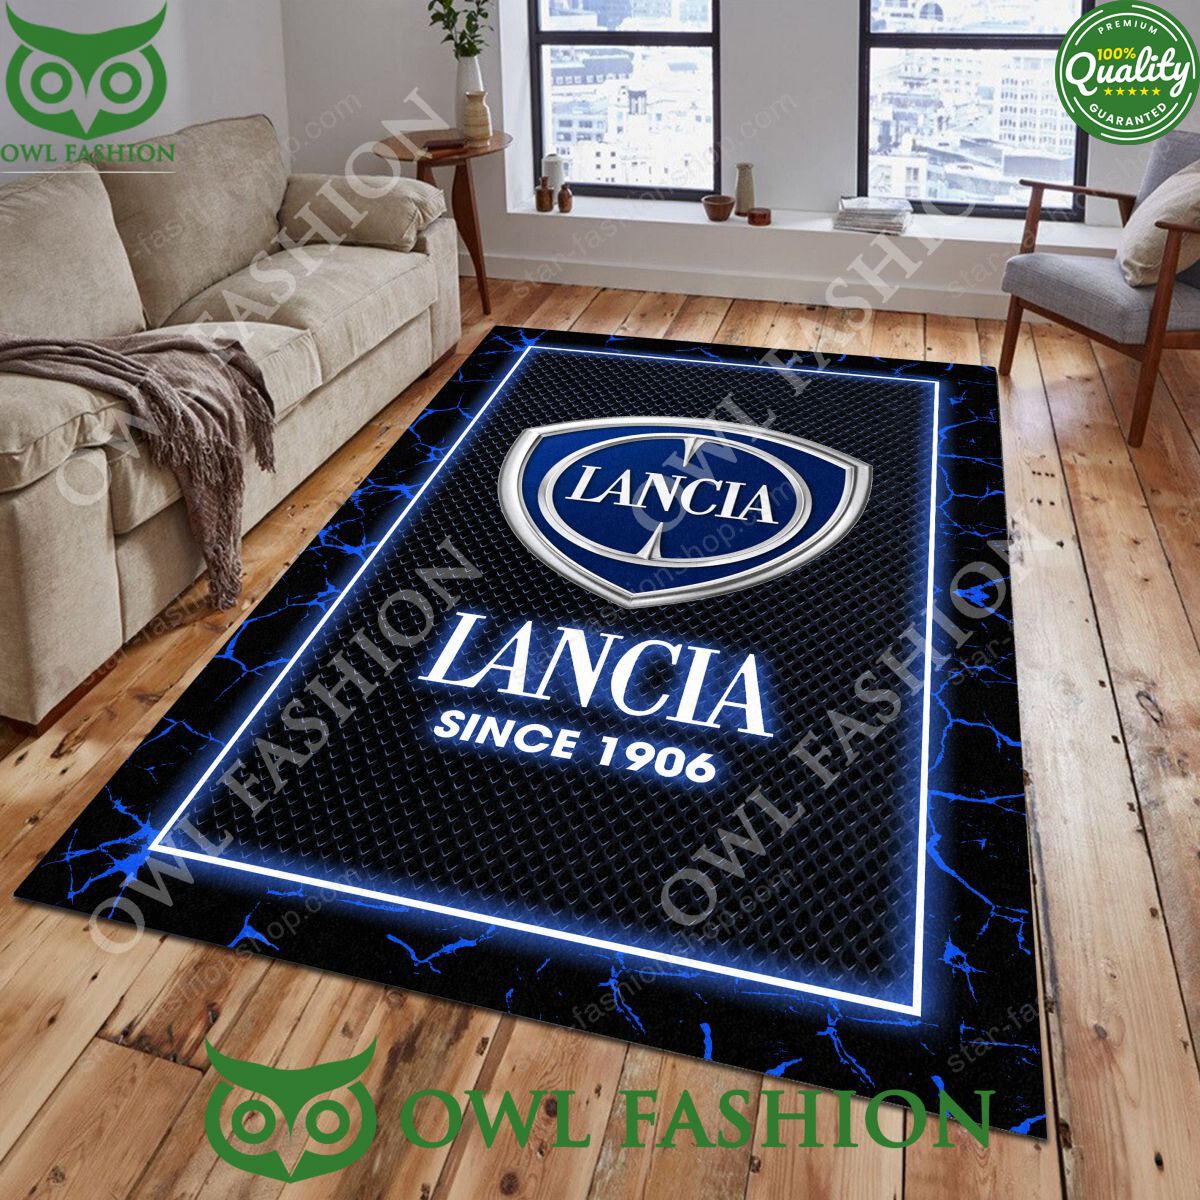 lancia luxury car brand limited lighting rug carpet 1 25uji.jpg